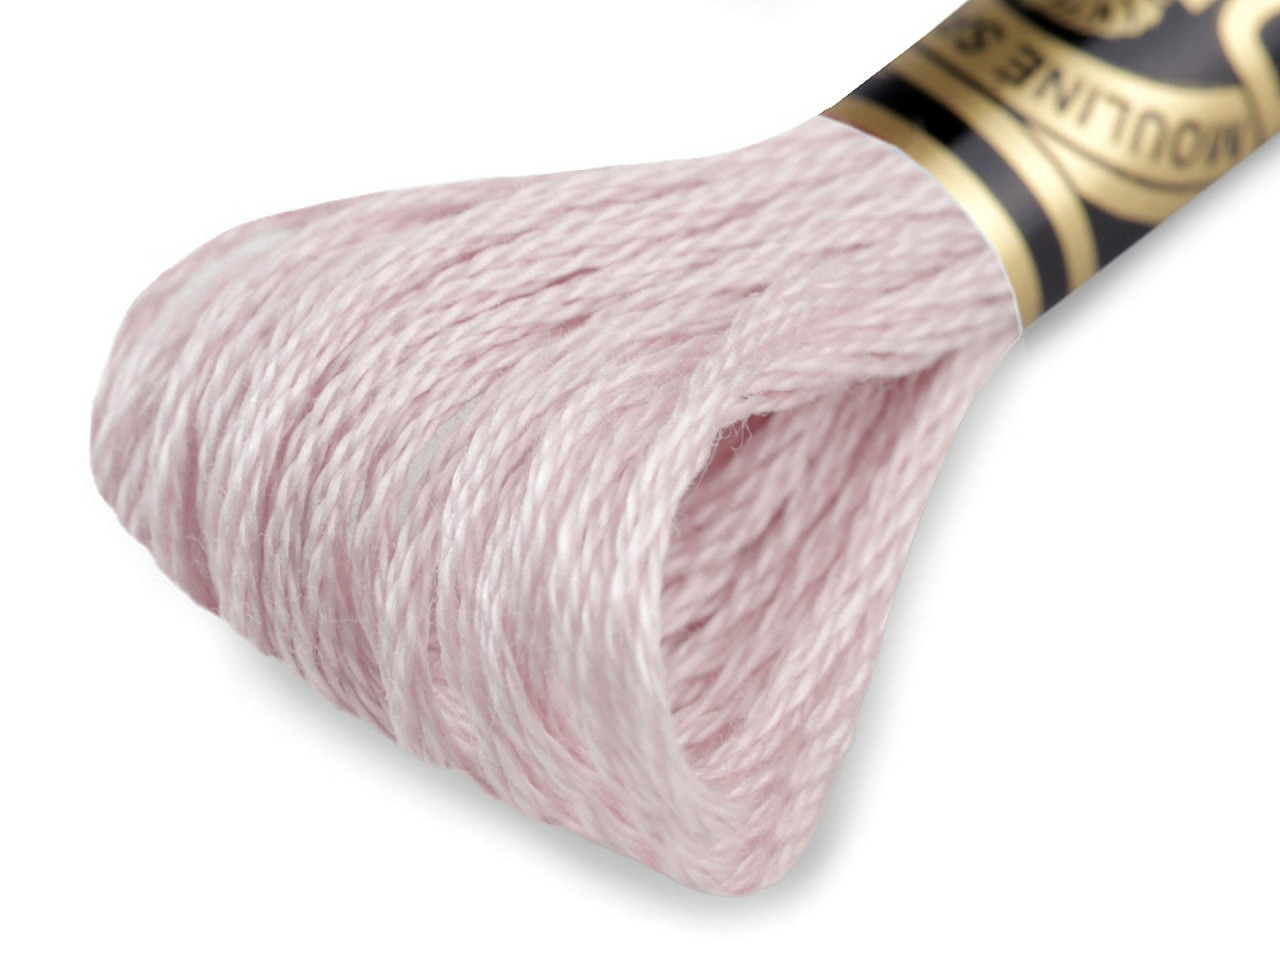 Vyšívací příze DMC Mouliné Spécial Cotton, barva 23 Pearl Blush